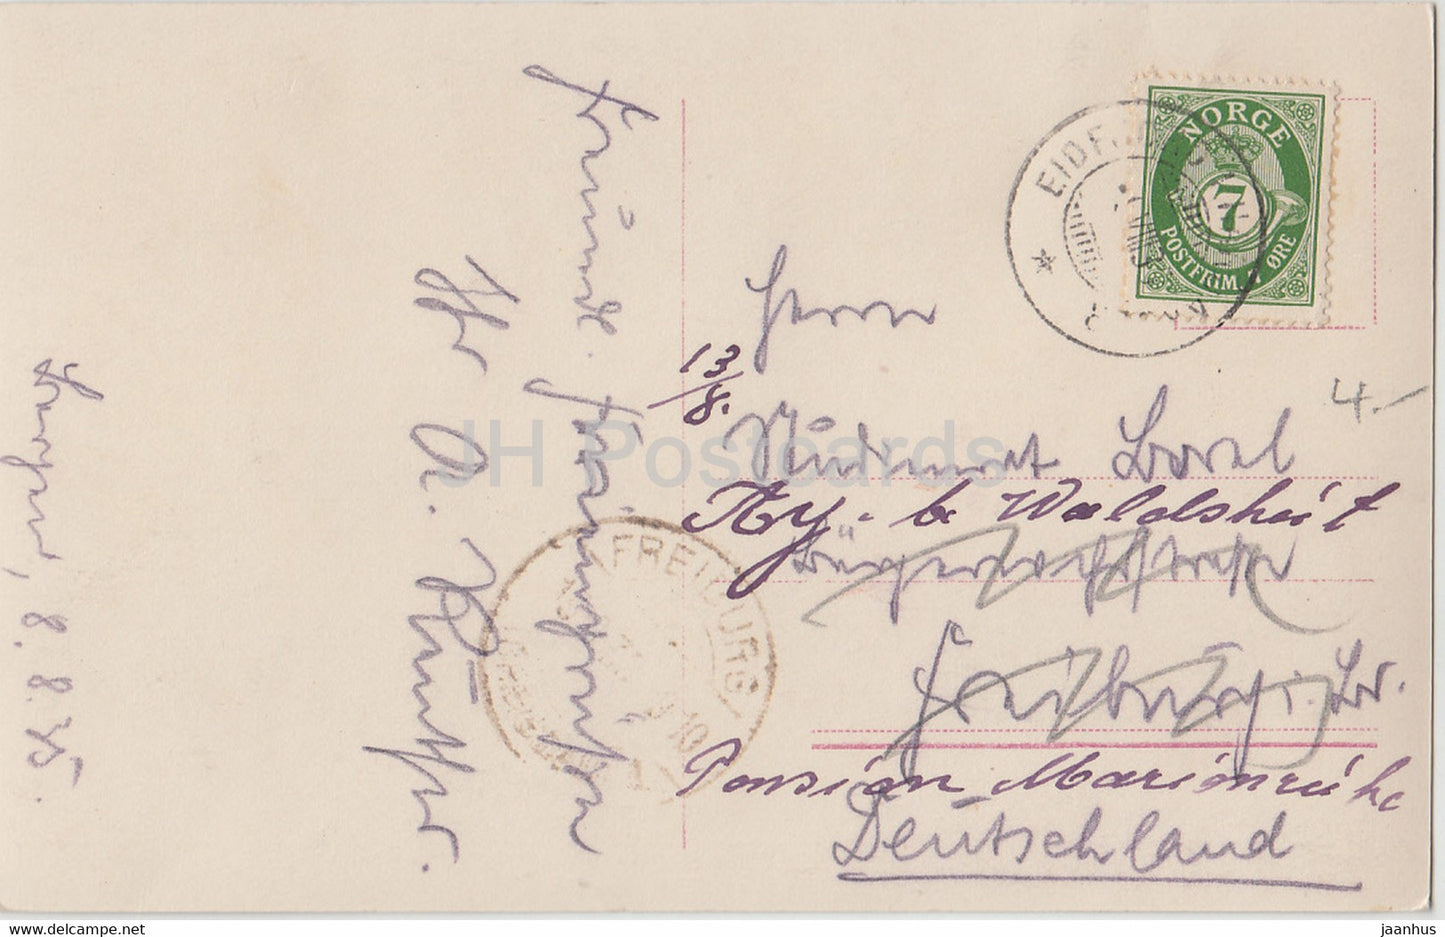 Bergen - Innenansicht der Haakonshallen - alte Postkarte - 1935 - Norwegen - gebraucht